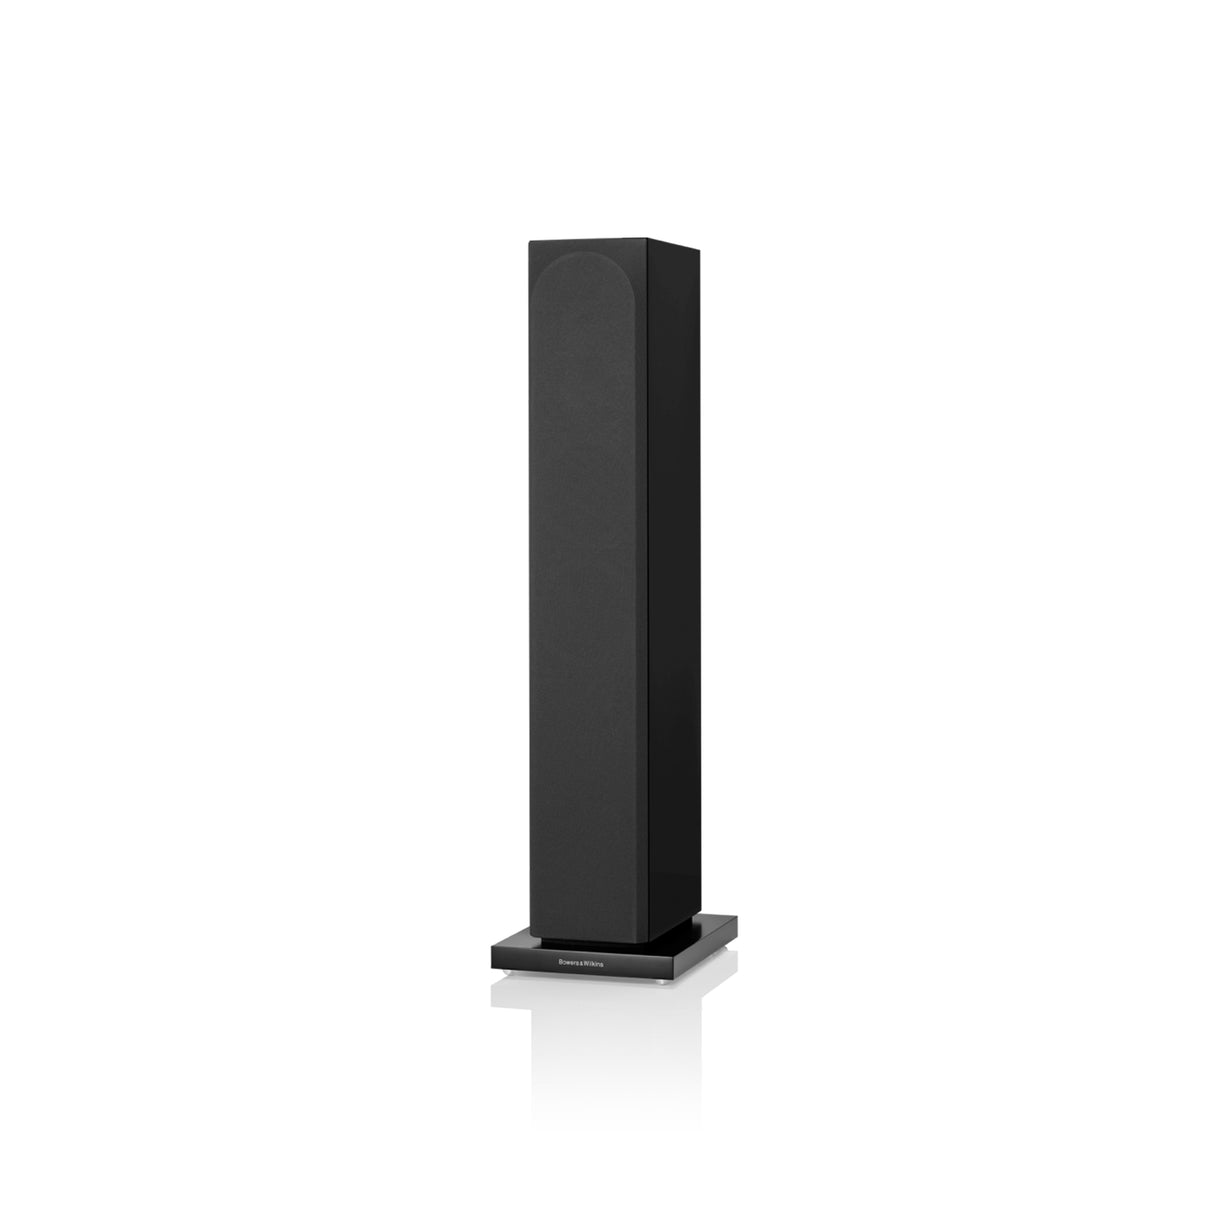 Bowers & Wilkins 704 S3 - 3 Way Floor Standing Speaker (Pair) (Gloss Black Colour)